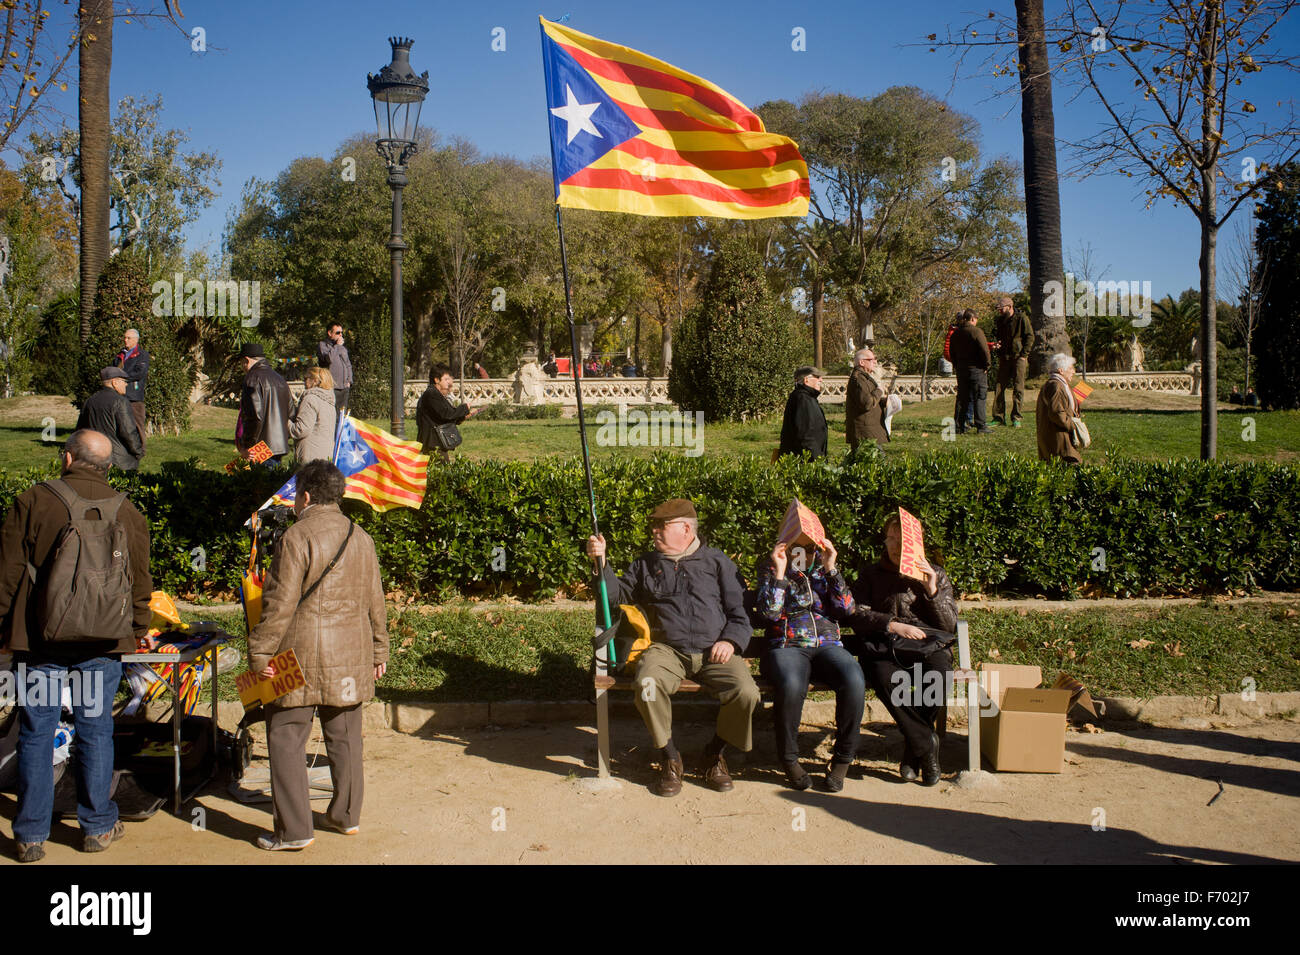 Un homme tient un drapeau estelada (symbole de l'indépendance catalane) au Parc de la Ciutadella de Barcelone, Espagne. Banque D'Images